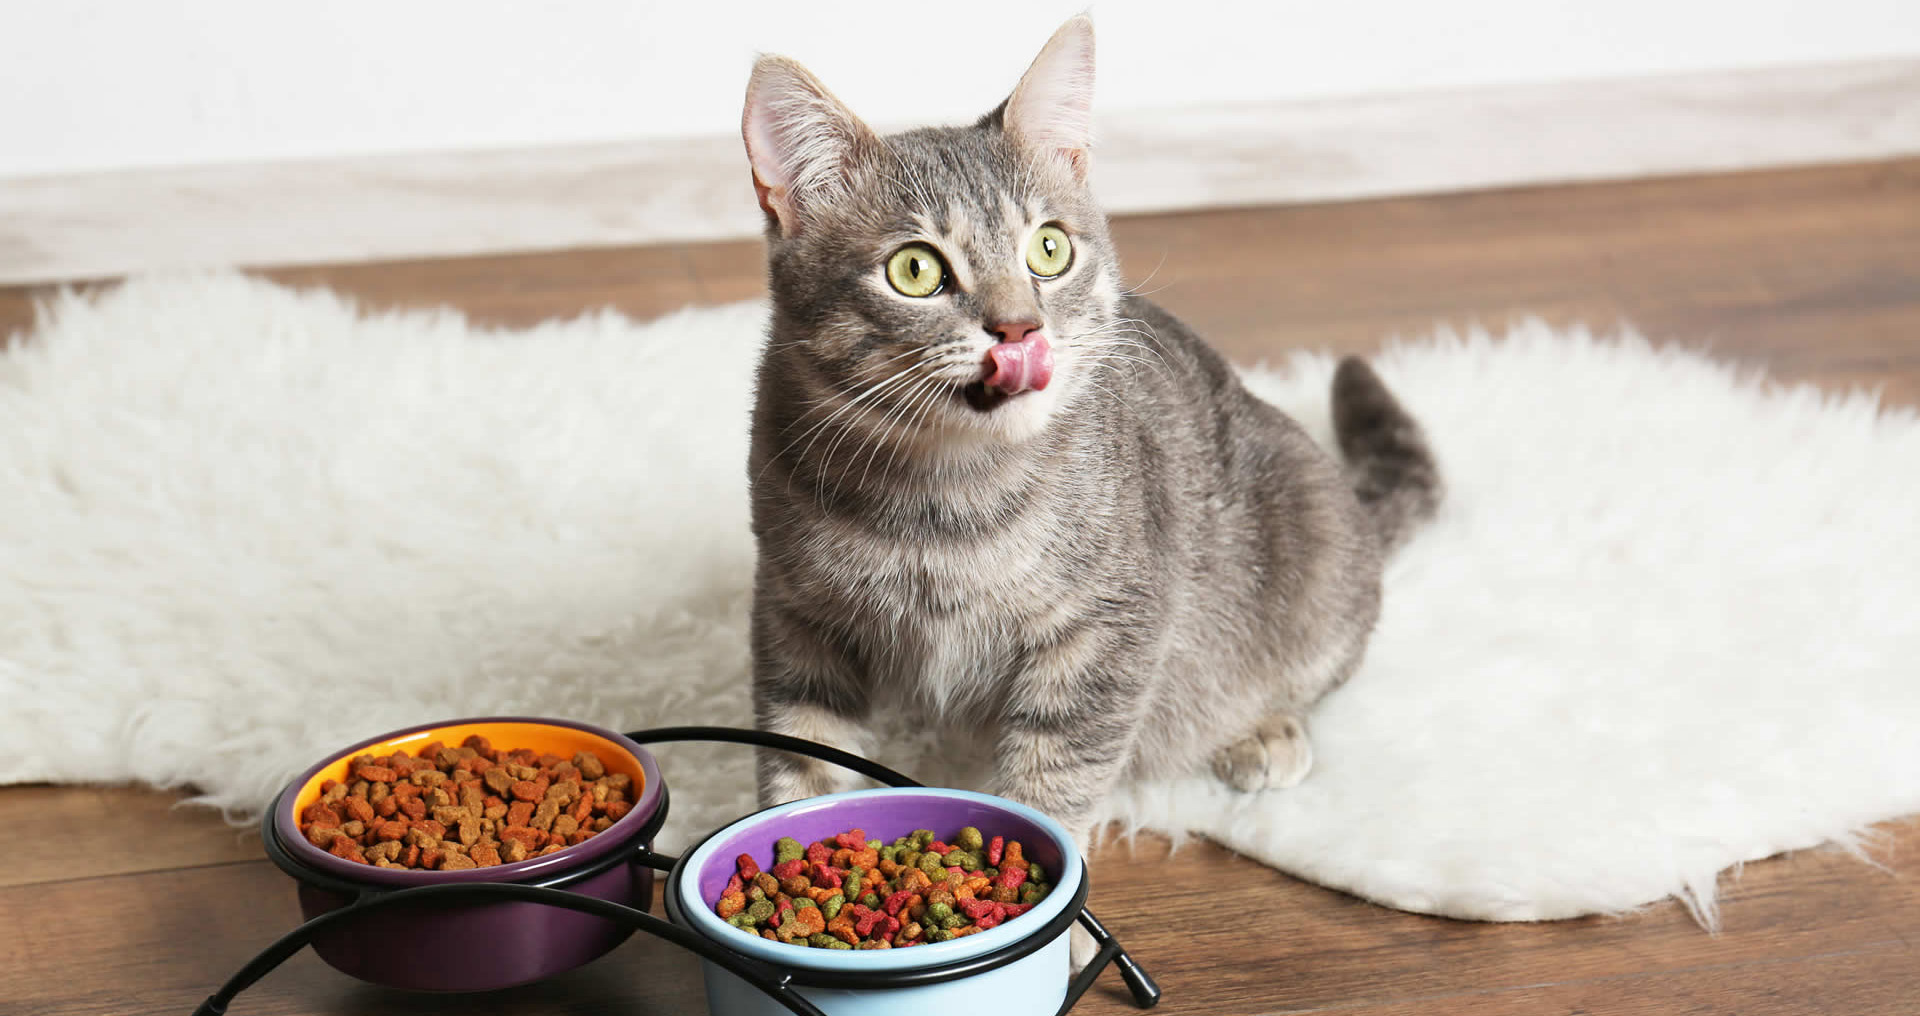 Чем кормить кошку, чтобы не навредить? — Интернет-магазин 7745.by